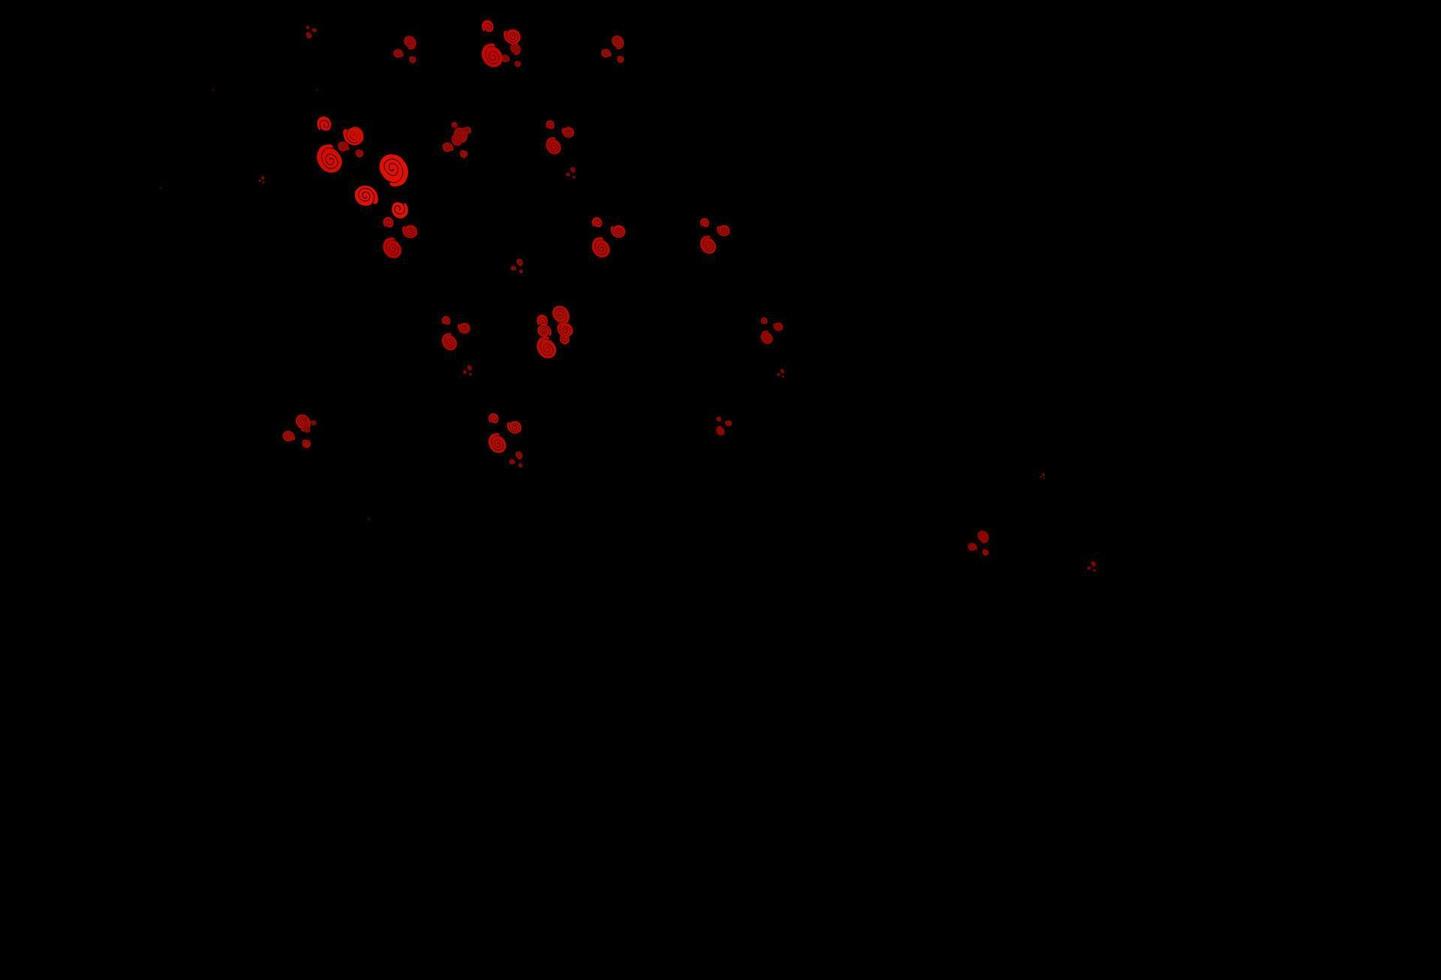 patrón de vector rojo oscuro con formas de burbujas.